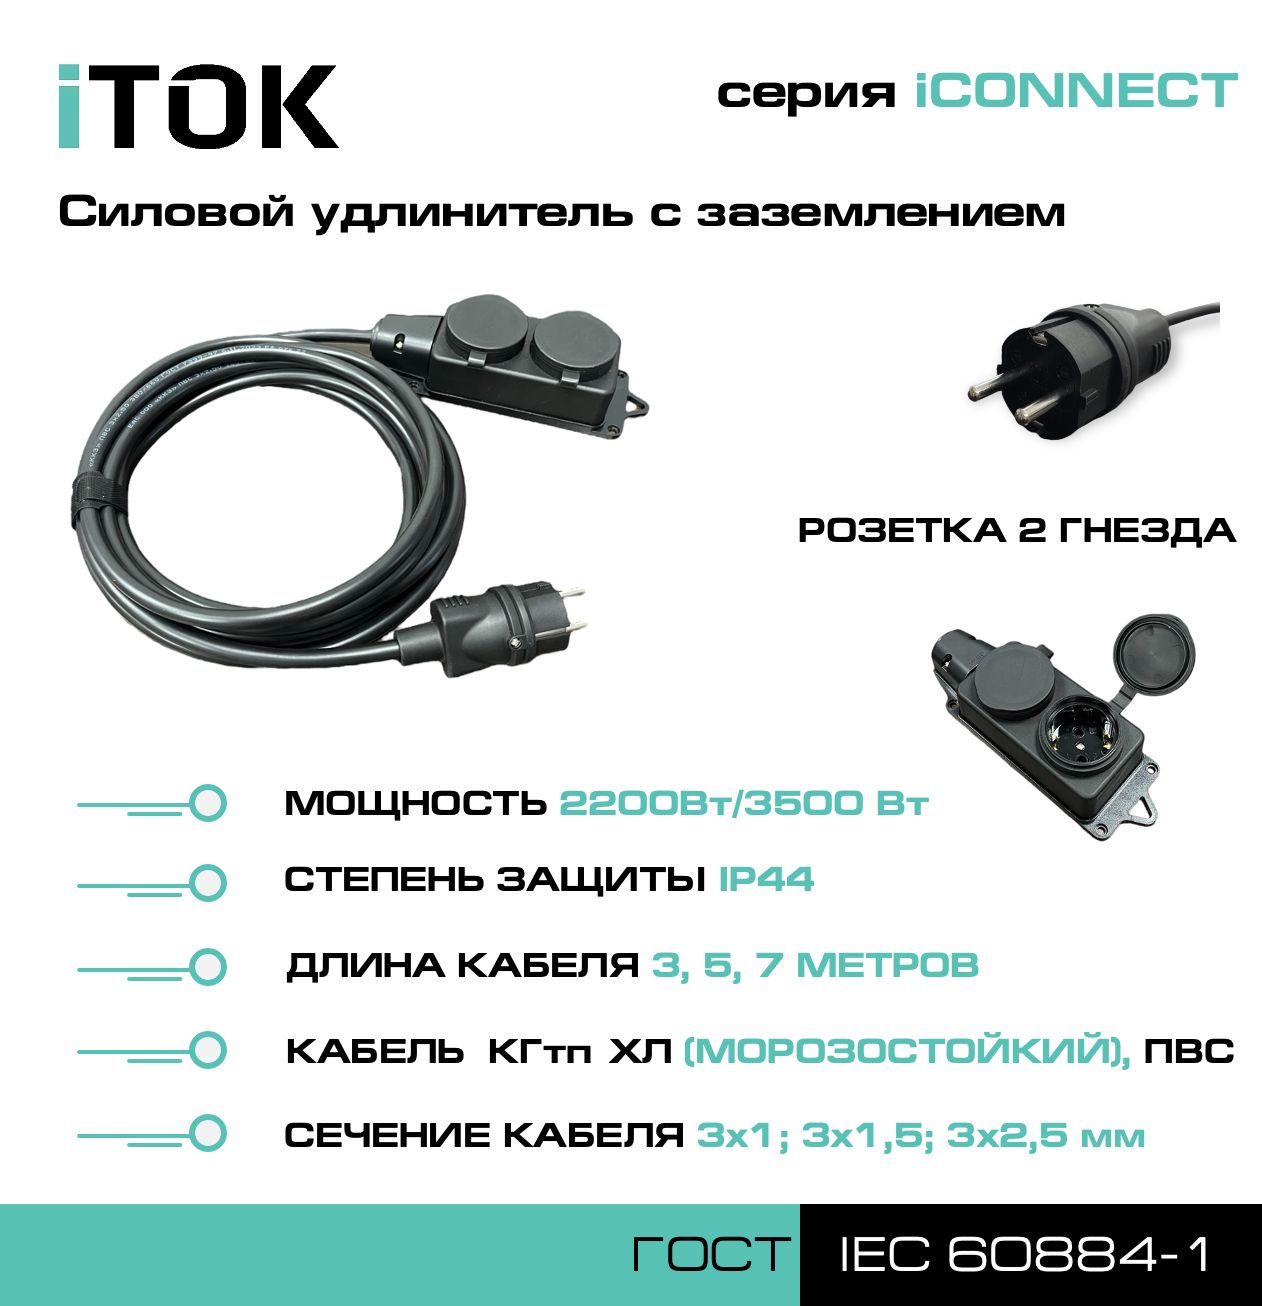 Удлинитель с заземлением серии iTOK iCONNECT ПВС 3х1 мм 2 гнезда IP44 7 м